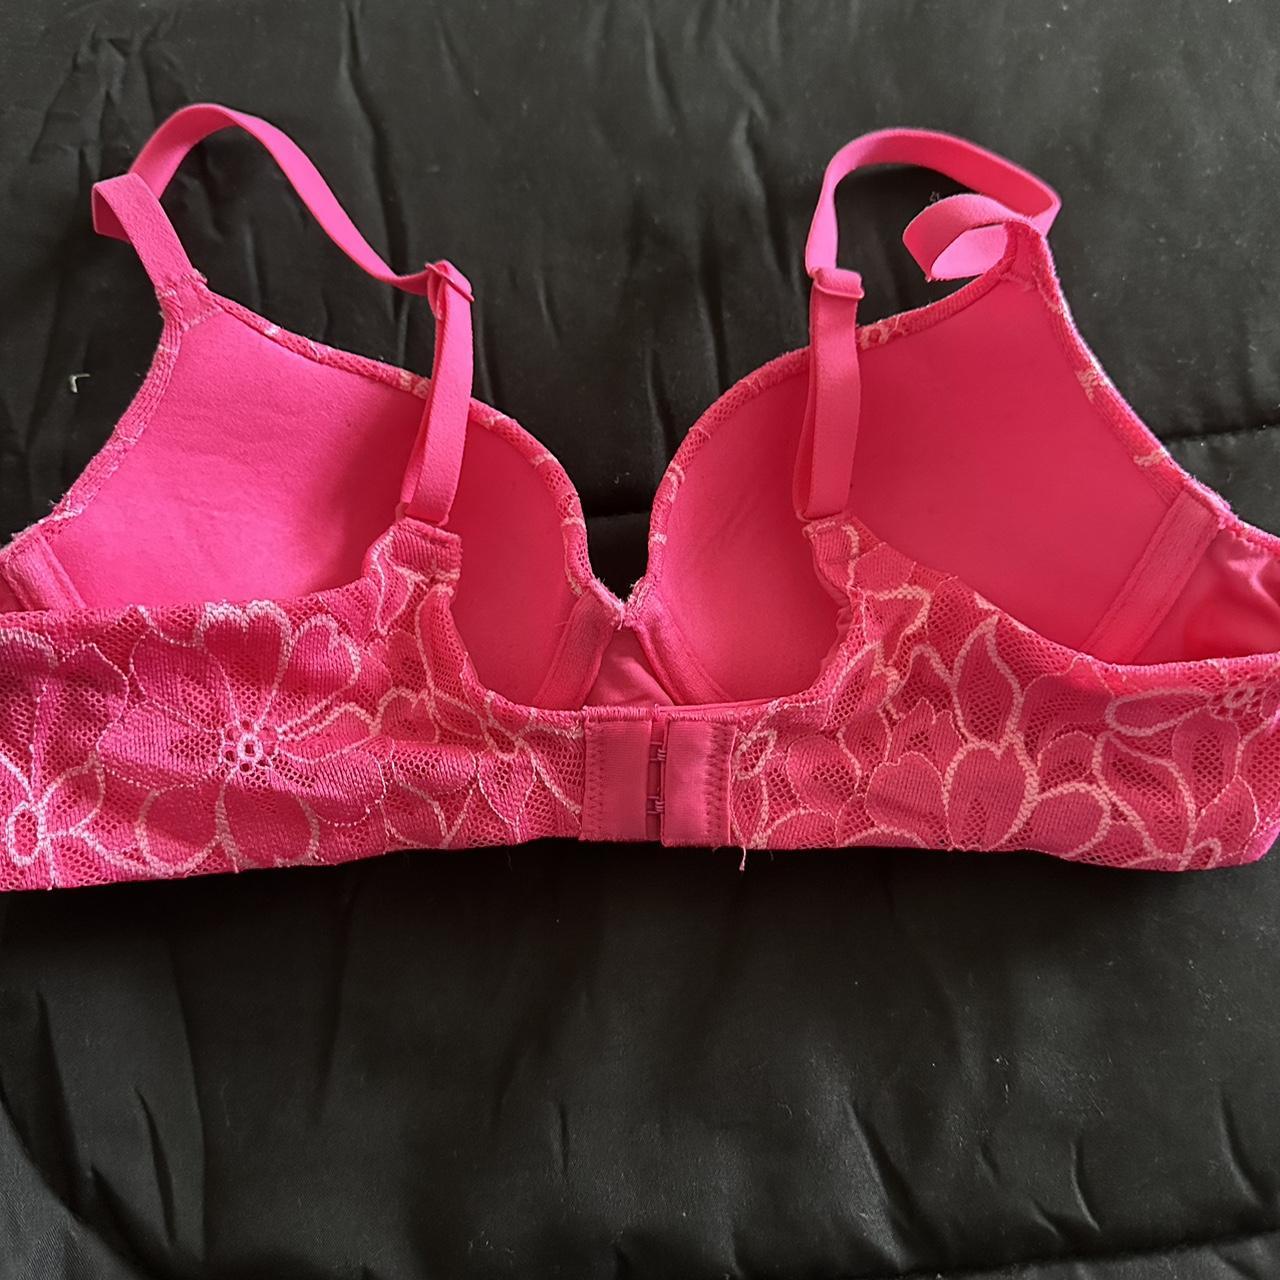 NWOT Floral pink bra slight push up size 34A never - Depop